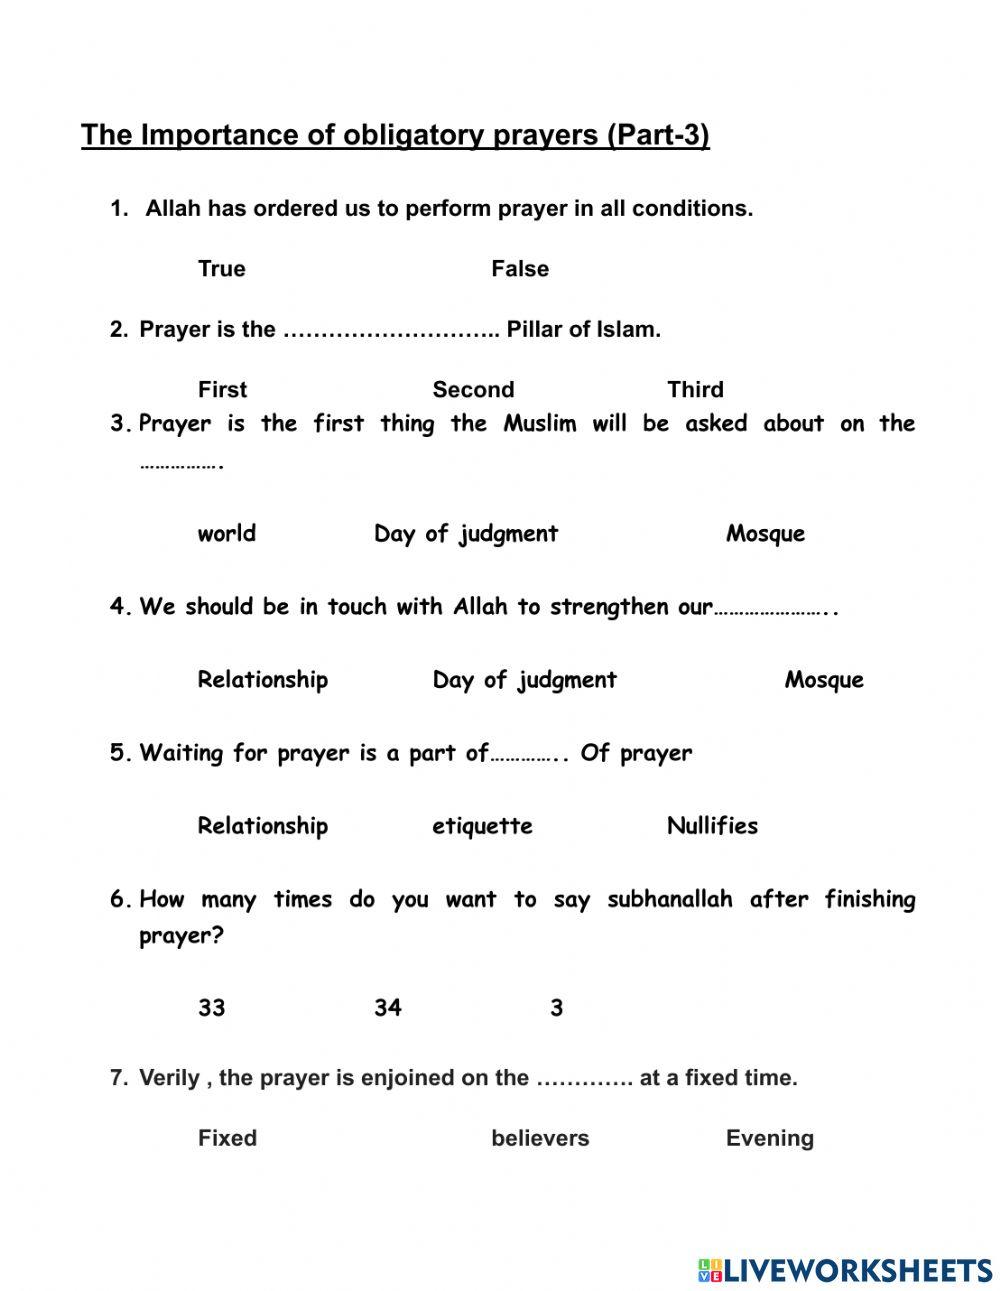 Etiquette of obligatory prayers-part 3